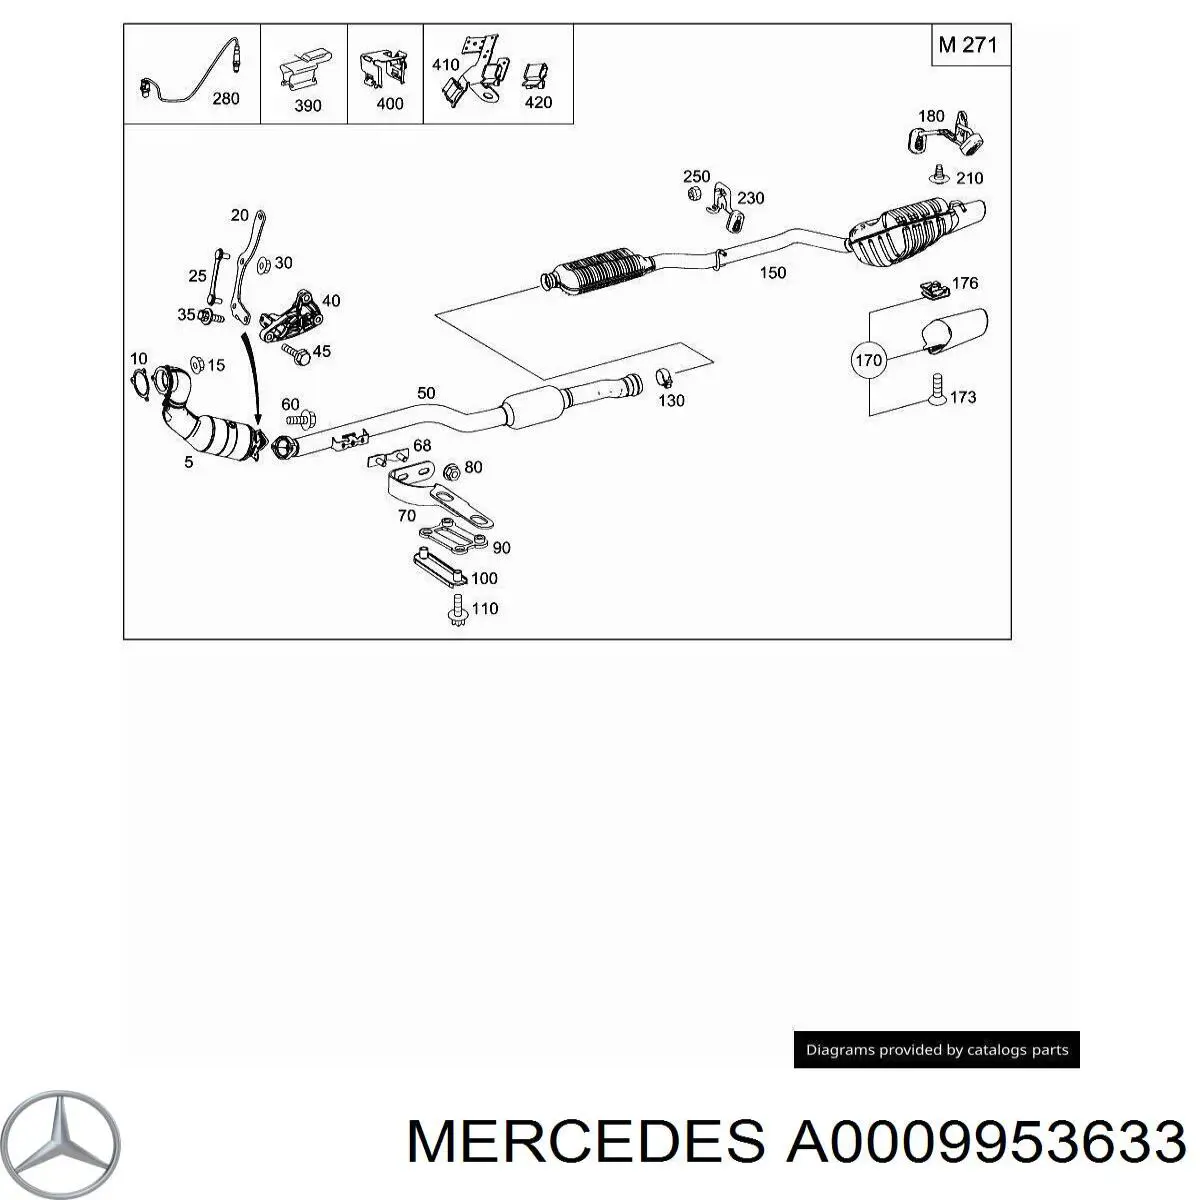 0009953633 Mercedes abrazadera para sujetar el catalizador a la turbina